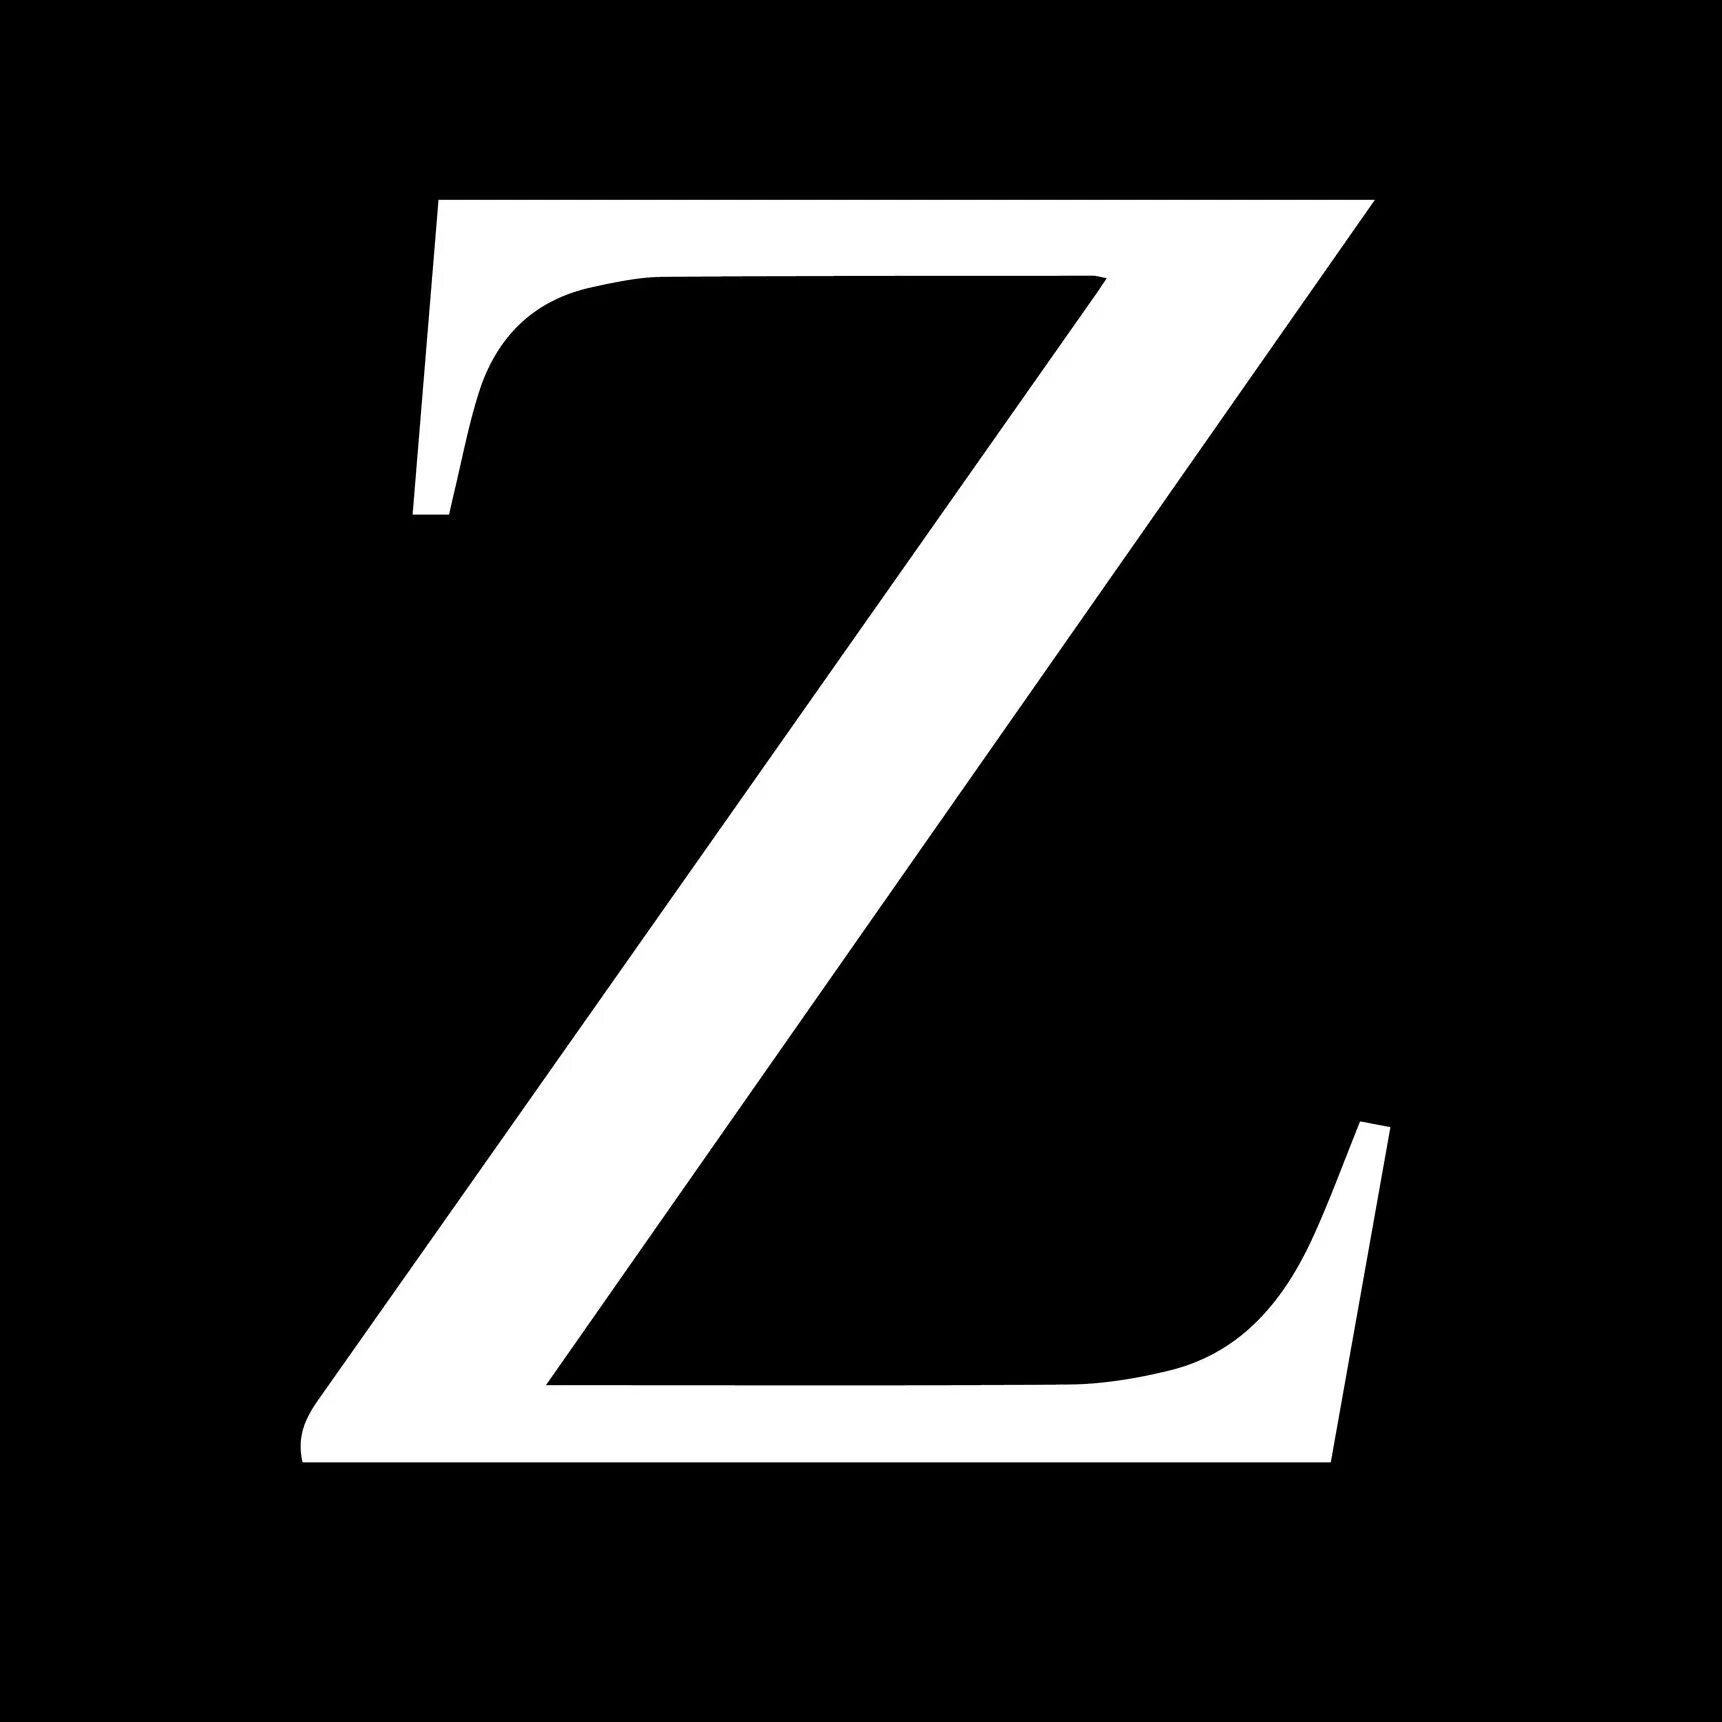 Знак z. Знак z картинка. Знак Zeta.